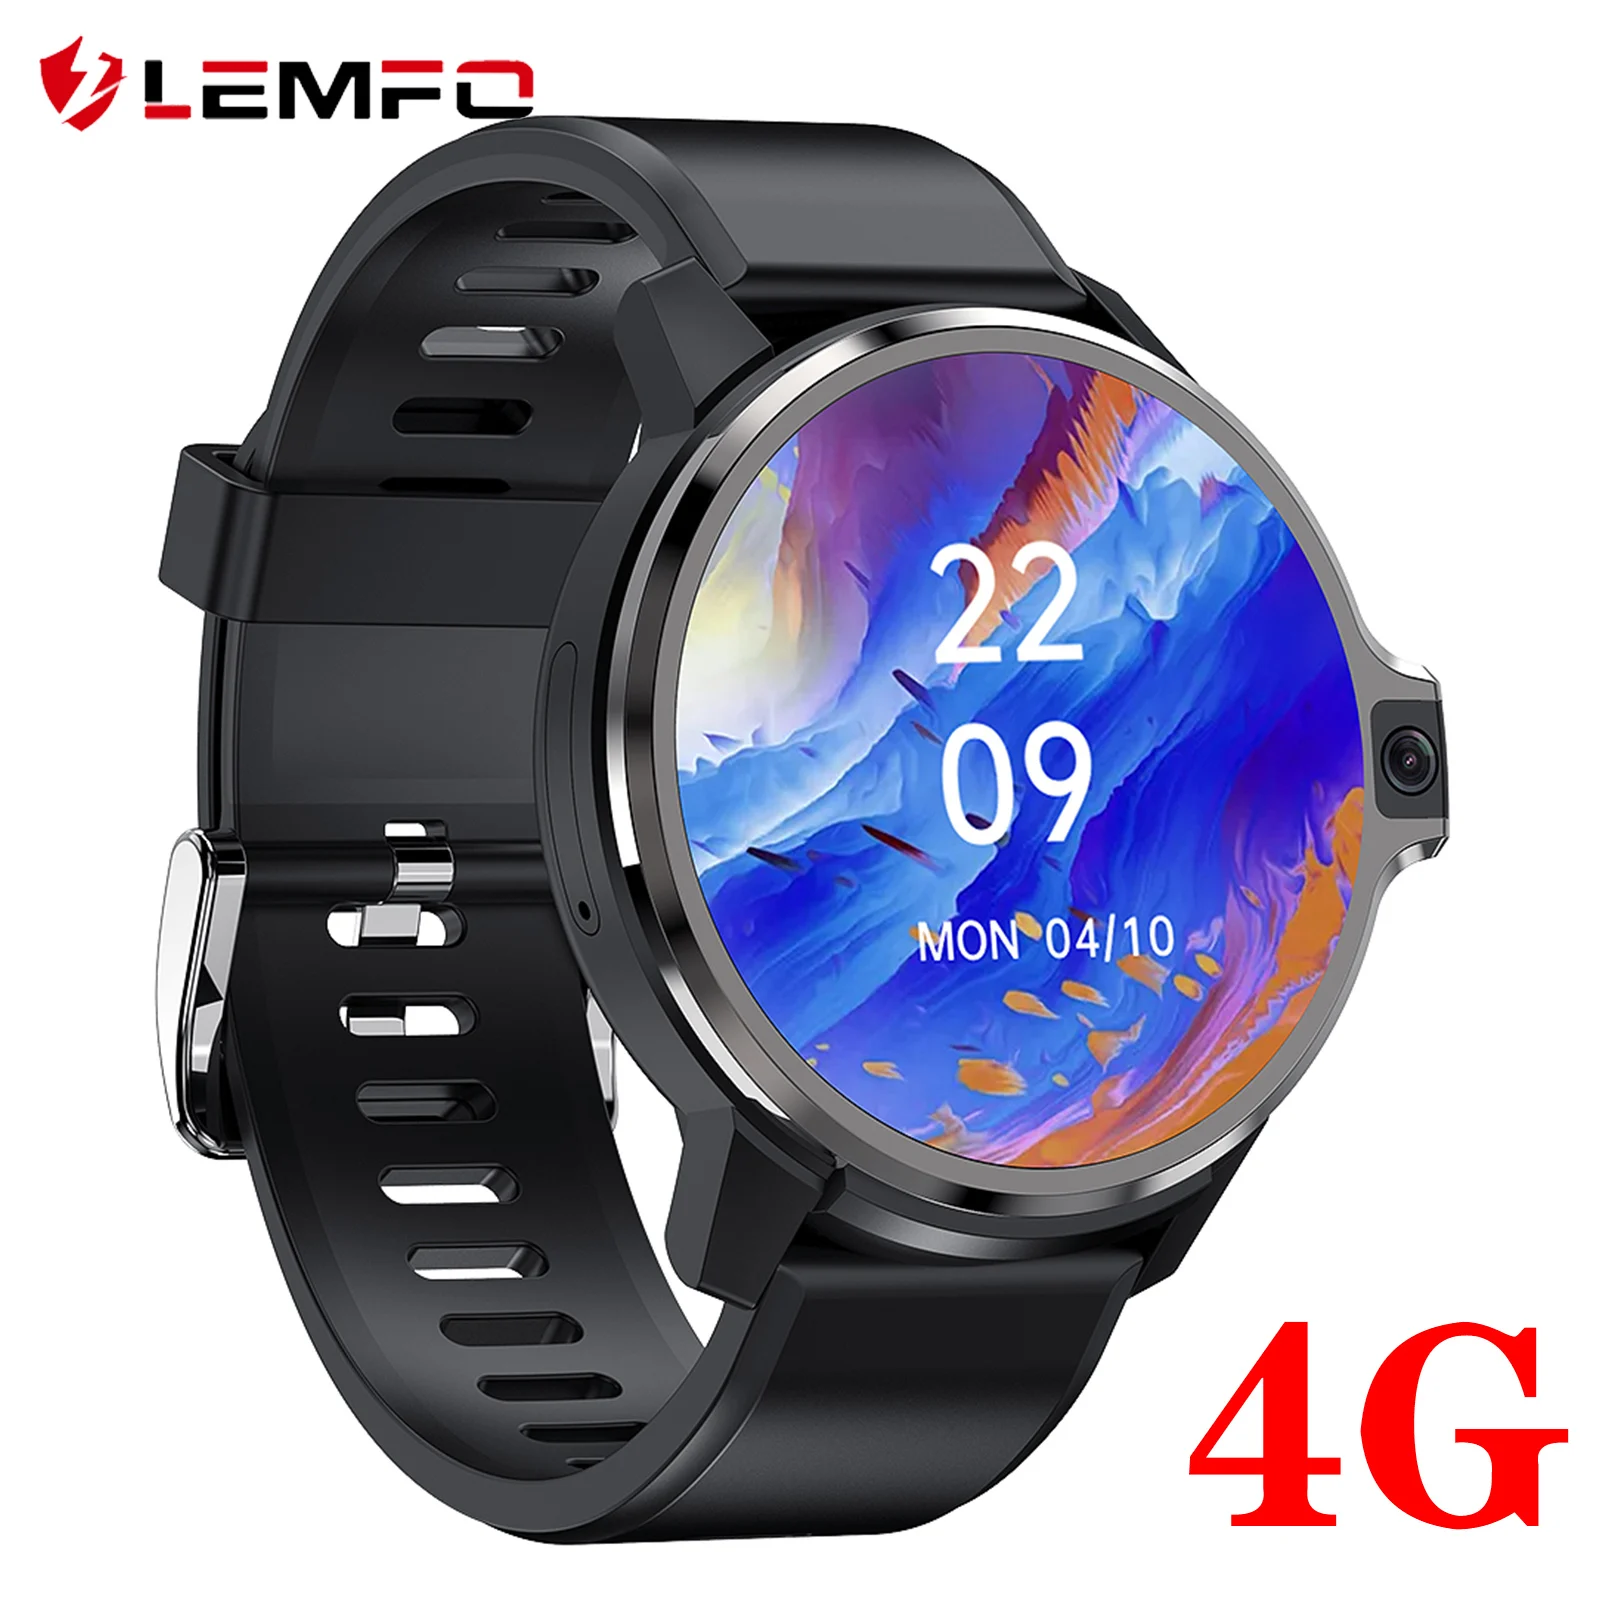 LEMFO смарт часы мужские женские LEMP 4G 64GB умные WIFI сим карта фитнес браслет IP67 waterproof